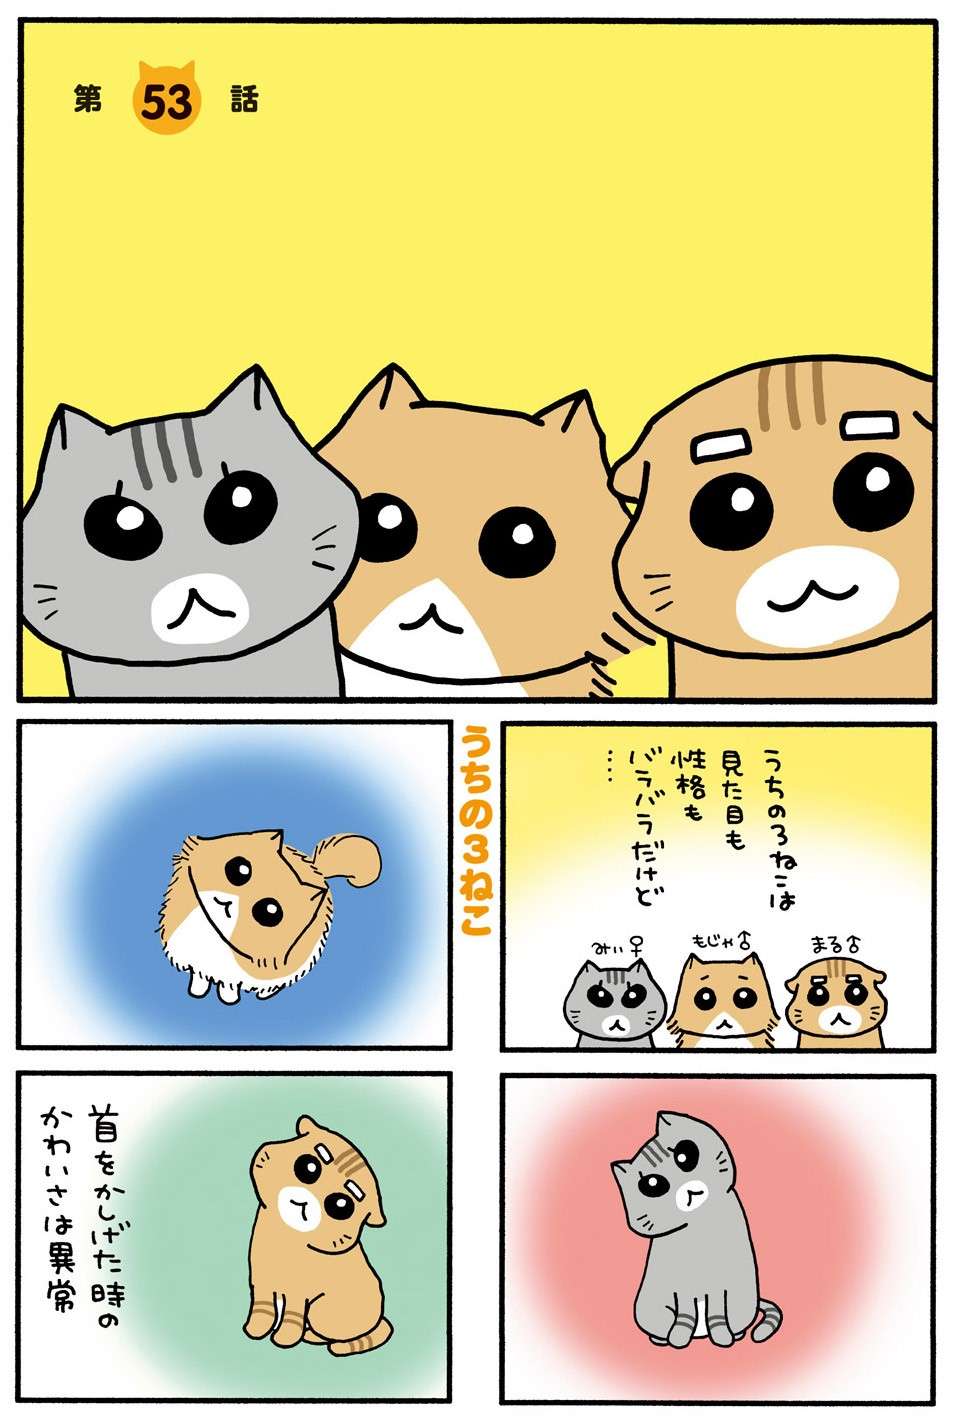 猫の自己主張が強い...！  パソコンに集中する飼い主の気を引くため、猫がとった行動は？／うちの3ねこ uchinosanneko3_029.jpg